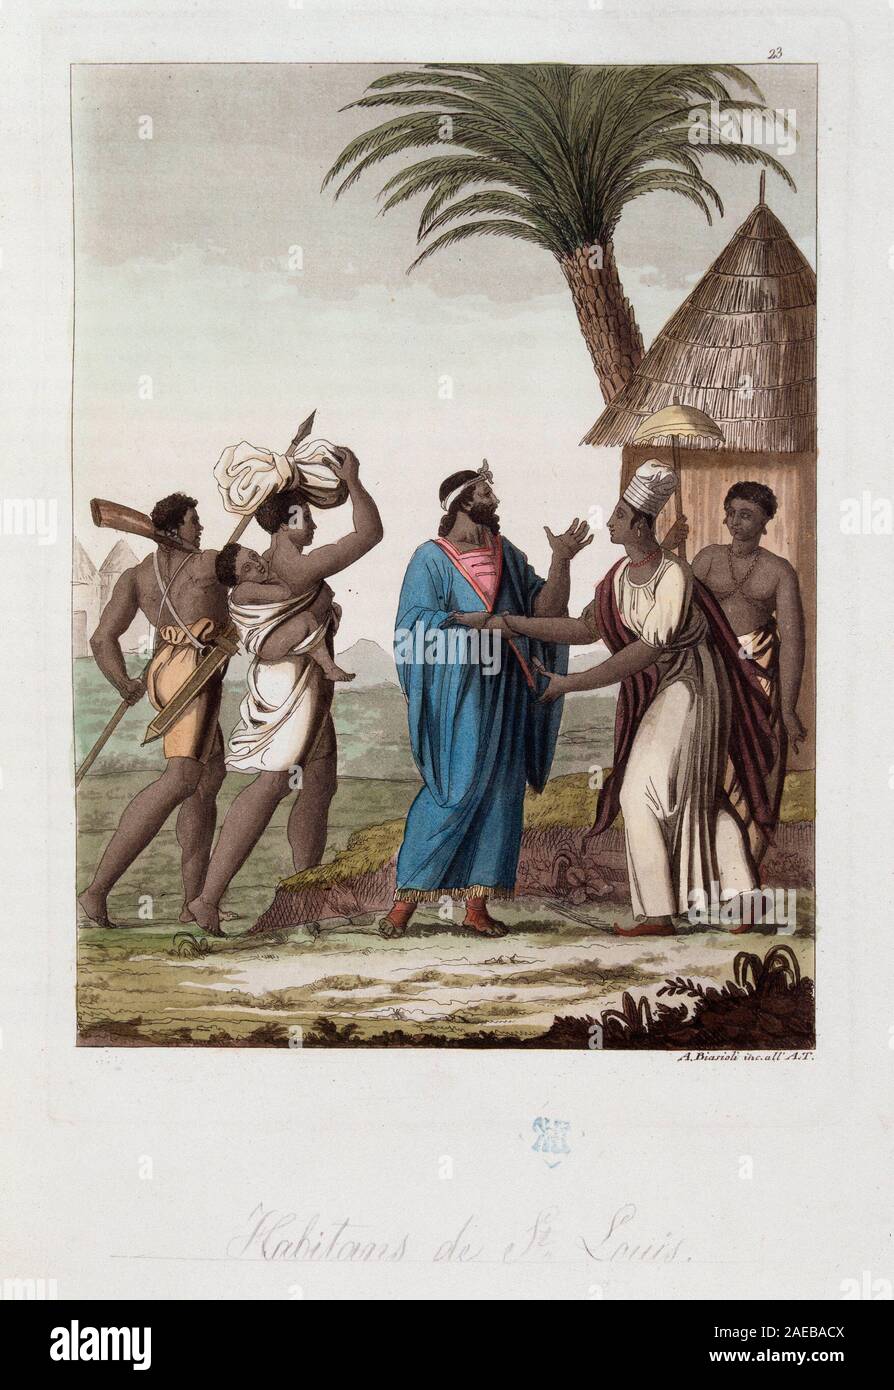 Habitants de Saint Louis du Senegal - in 'Le costume ancien et moderne' par Ferrario, ed Milan, 1819-20 ©/ Stock Photo